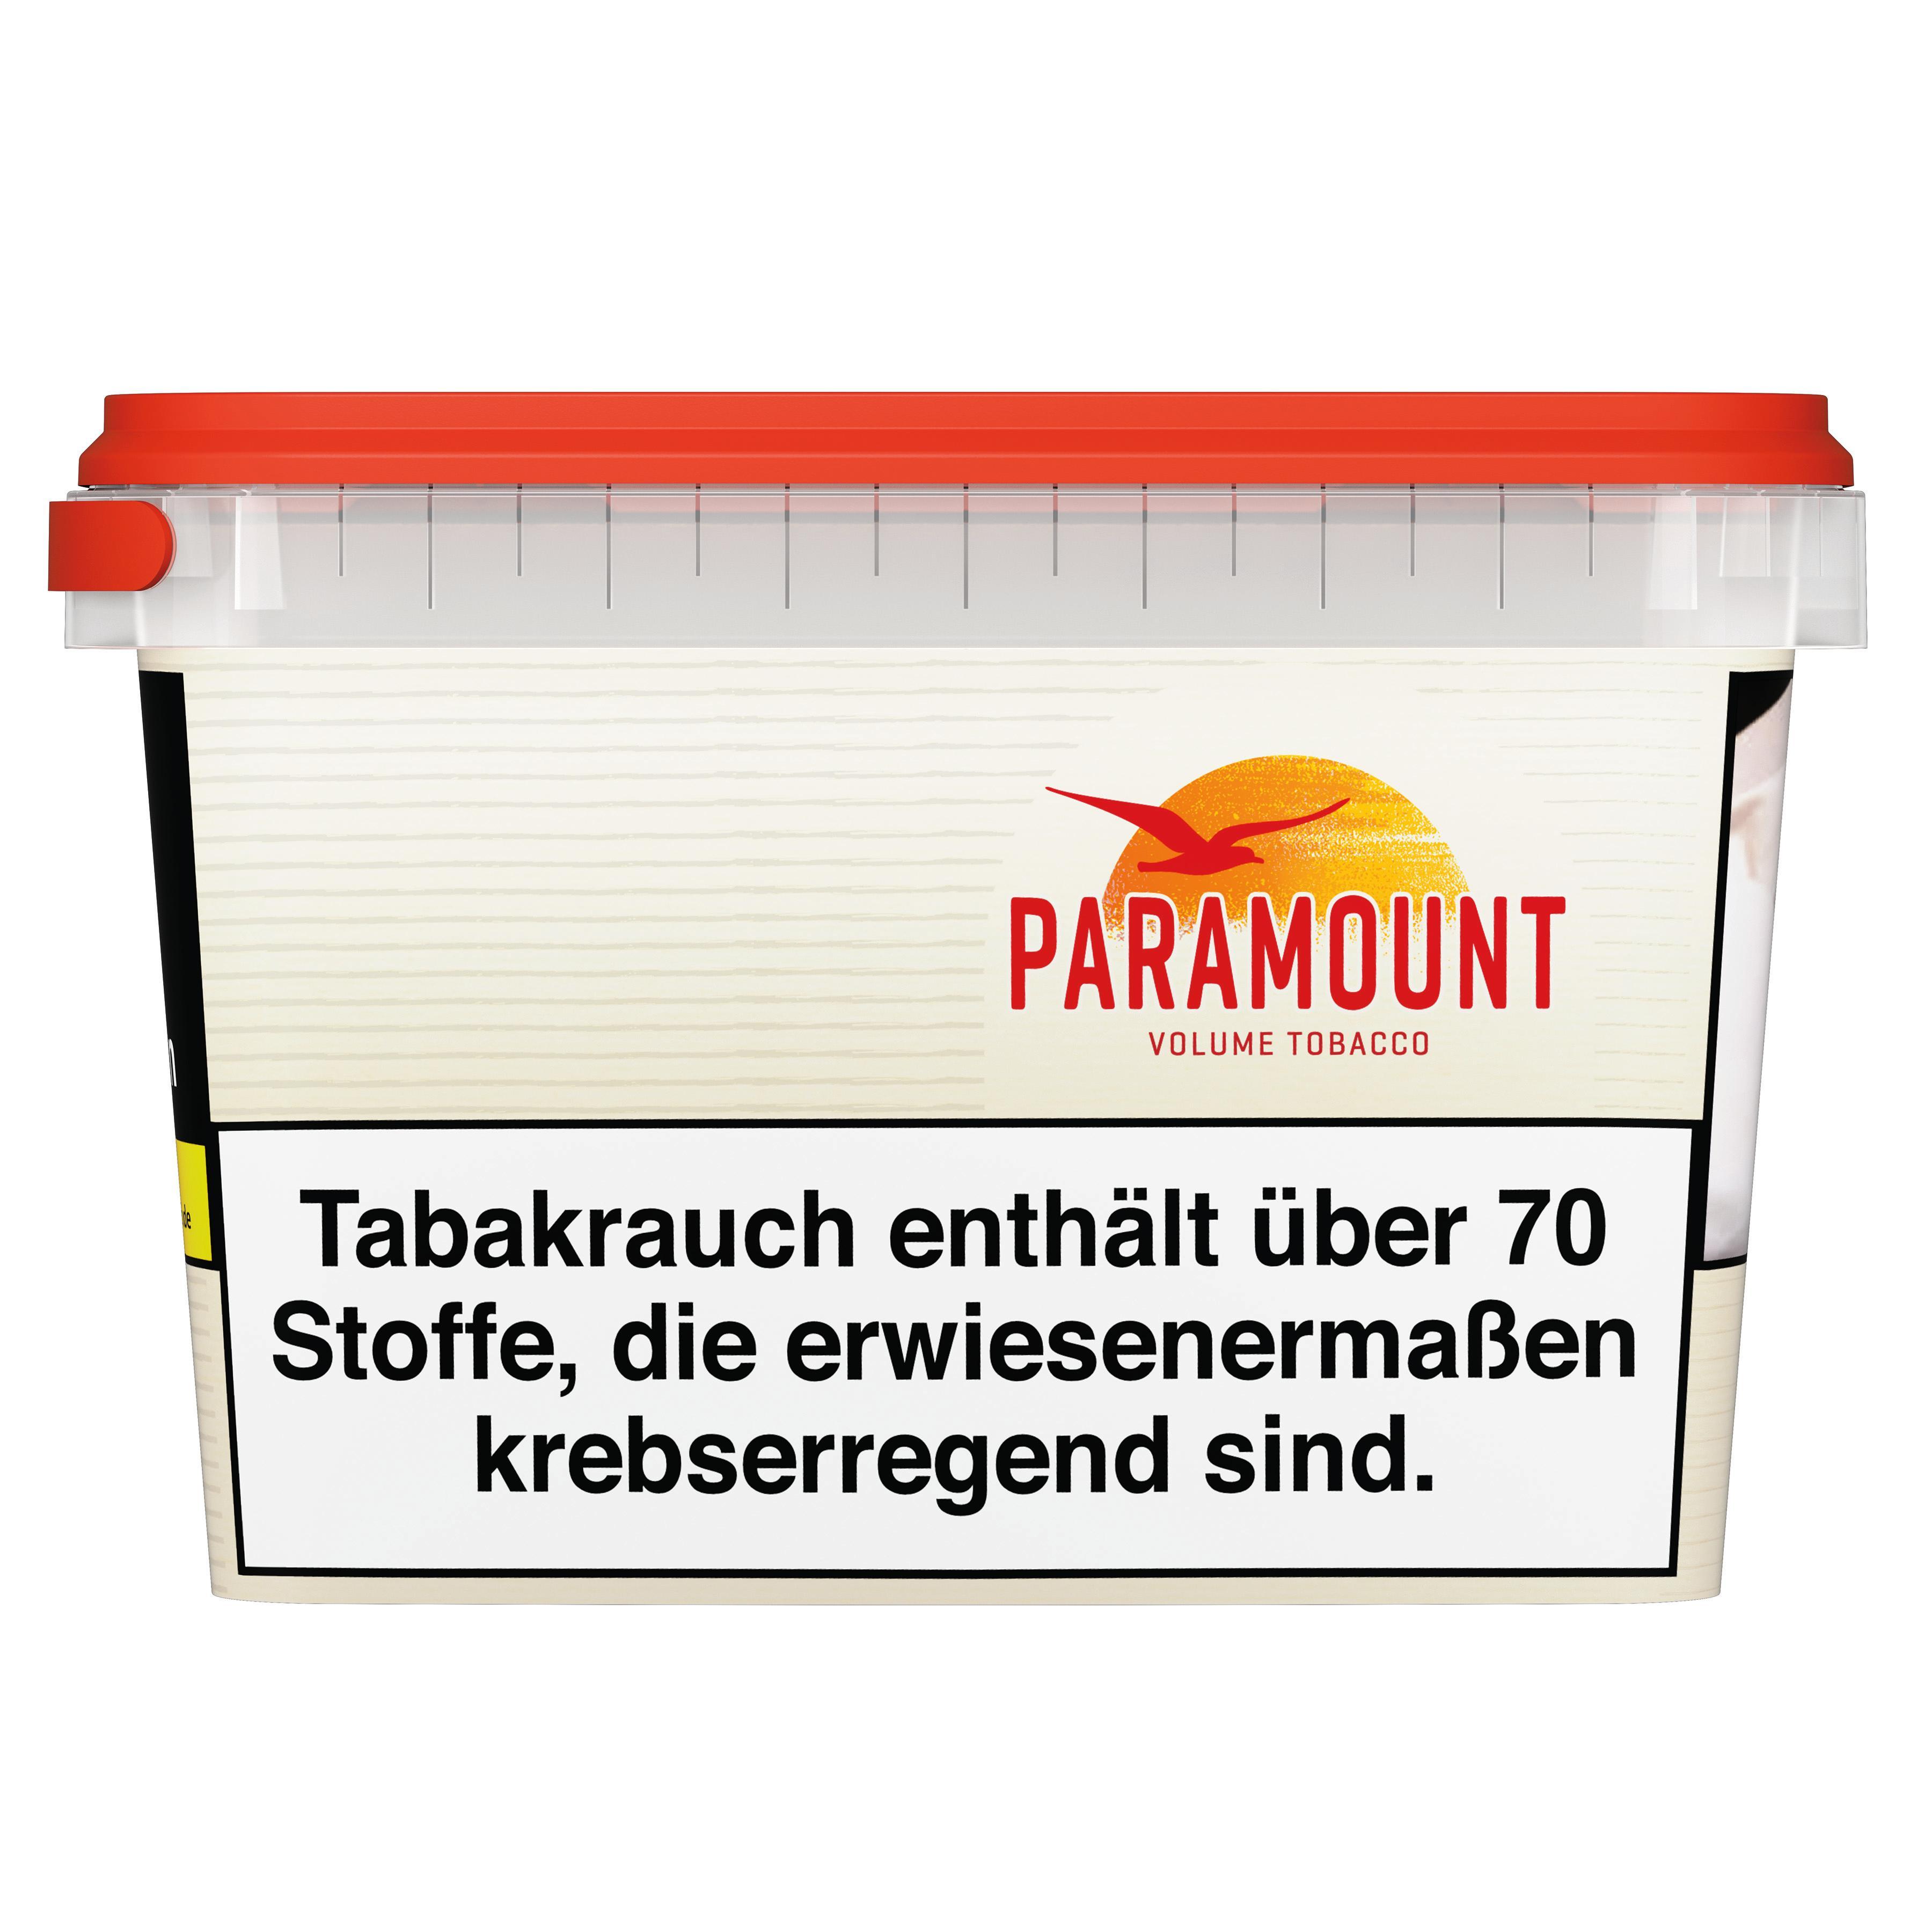 PARAMOUNT Volumen Tobacco Tabak beim Tabakdealer online